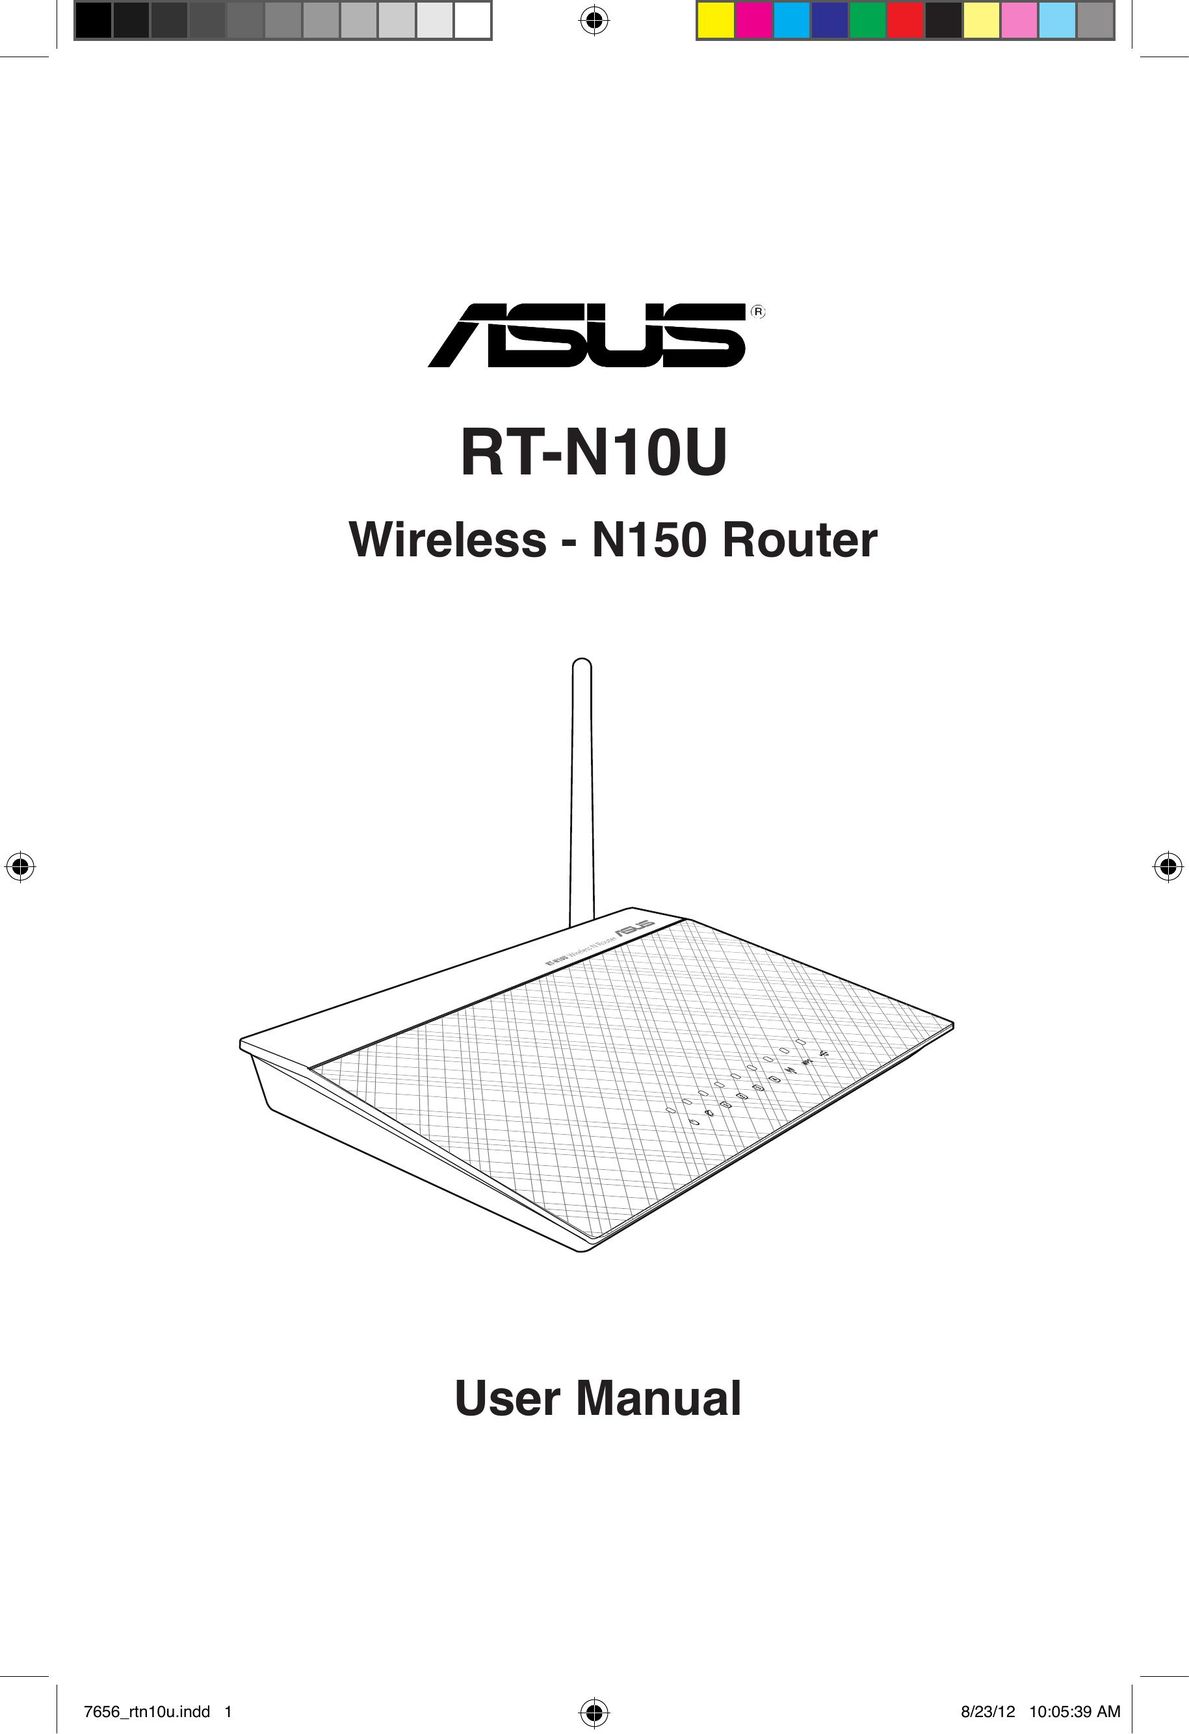 Asus RT-N10U Network Router User Manual